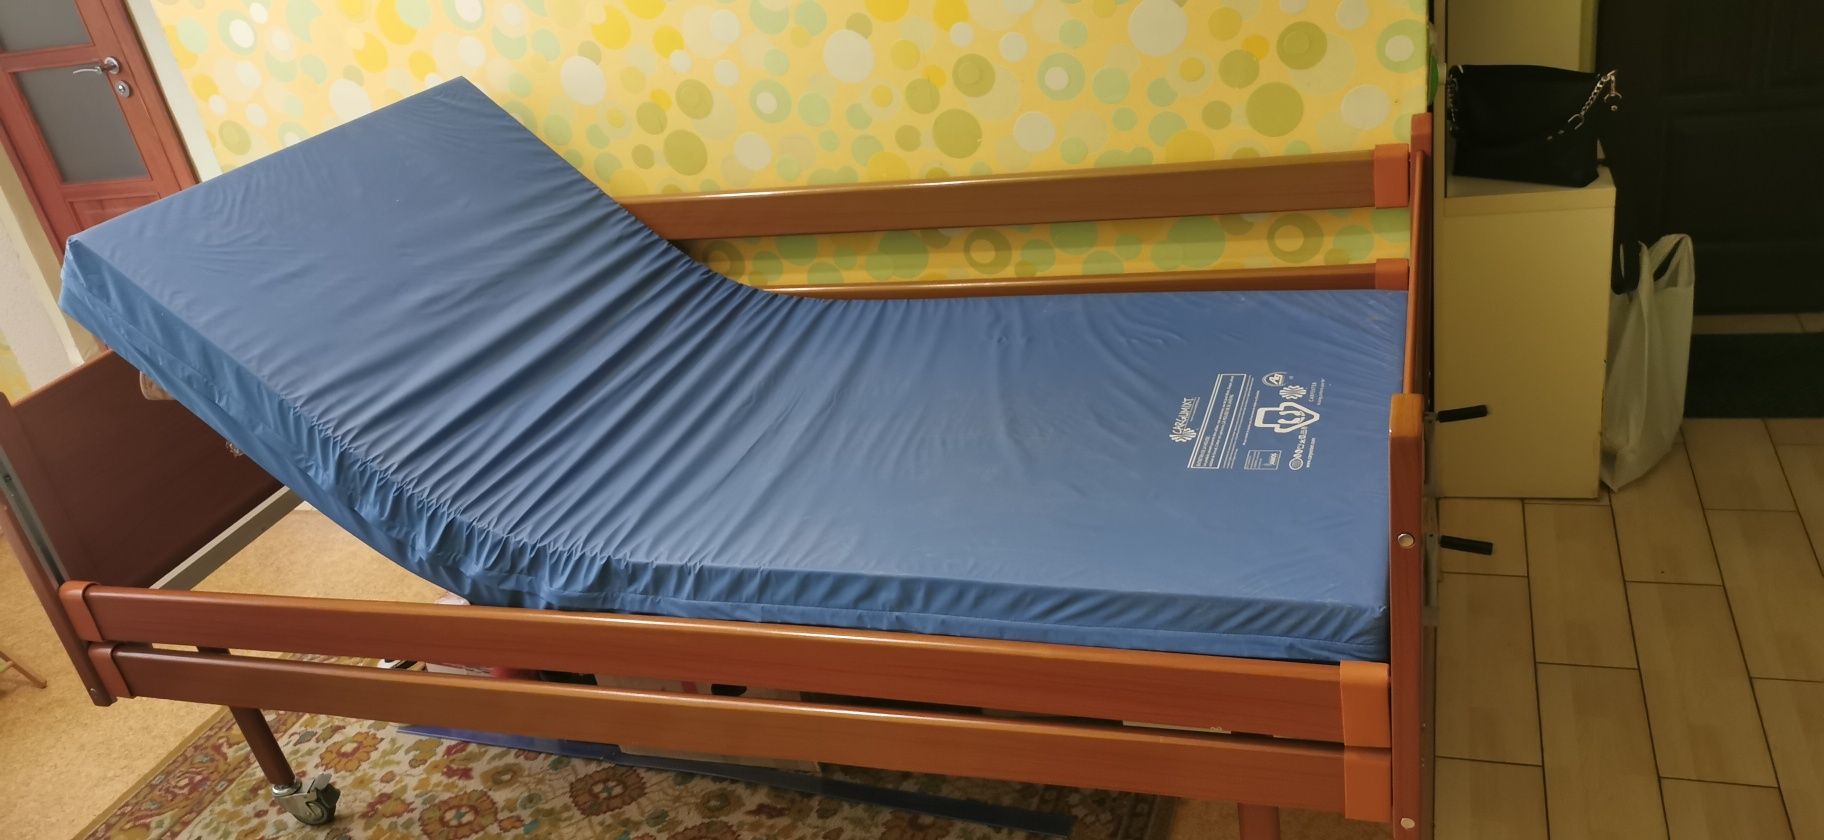 Медичне ліжко на колесах (4 секції) OSD-94 з антипродежневим матрацом